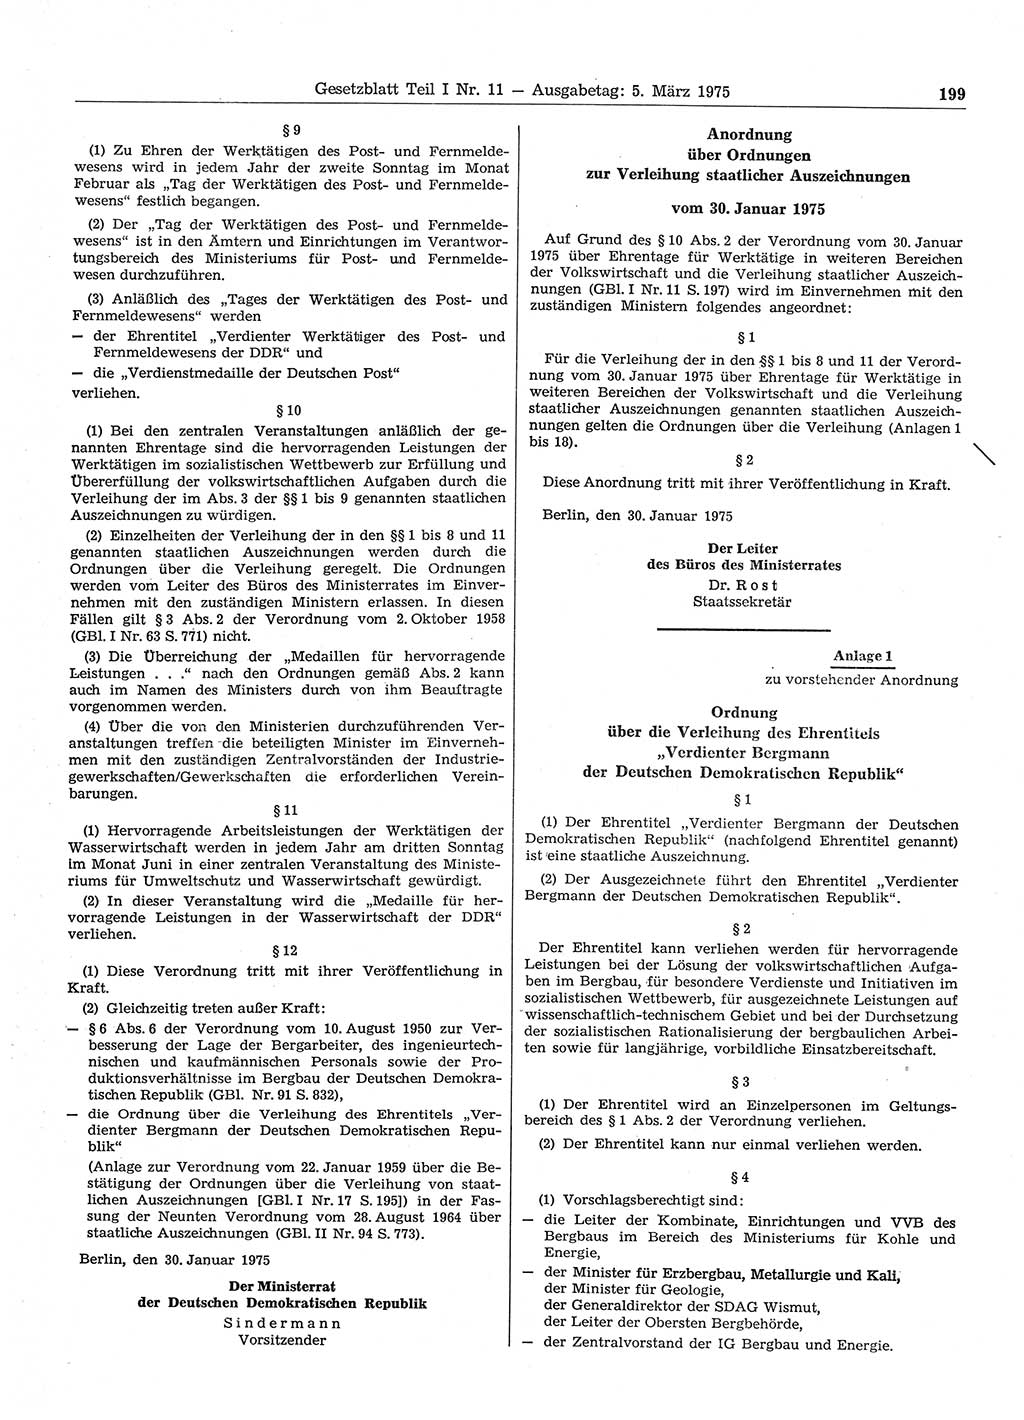 Gesetzblatt (GBl.) der Deutschen Demokratischen Republik (DDR) Teil Ⅰ 1975, Seite 199 (GBl. DDR Ⅰ 1975, S. 199)